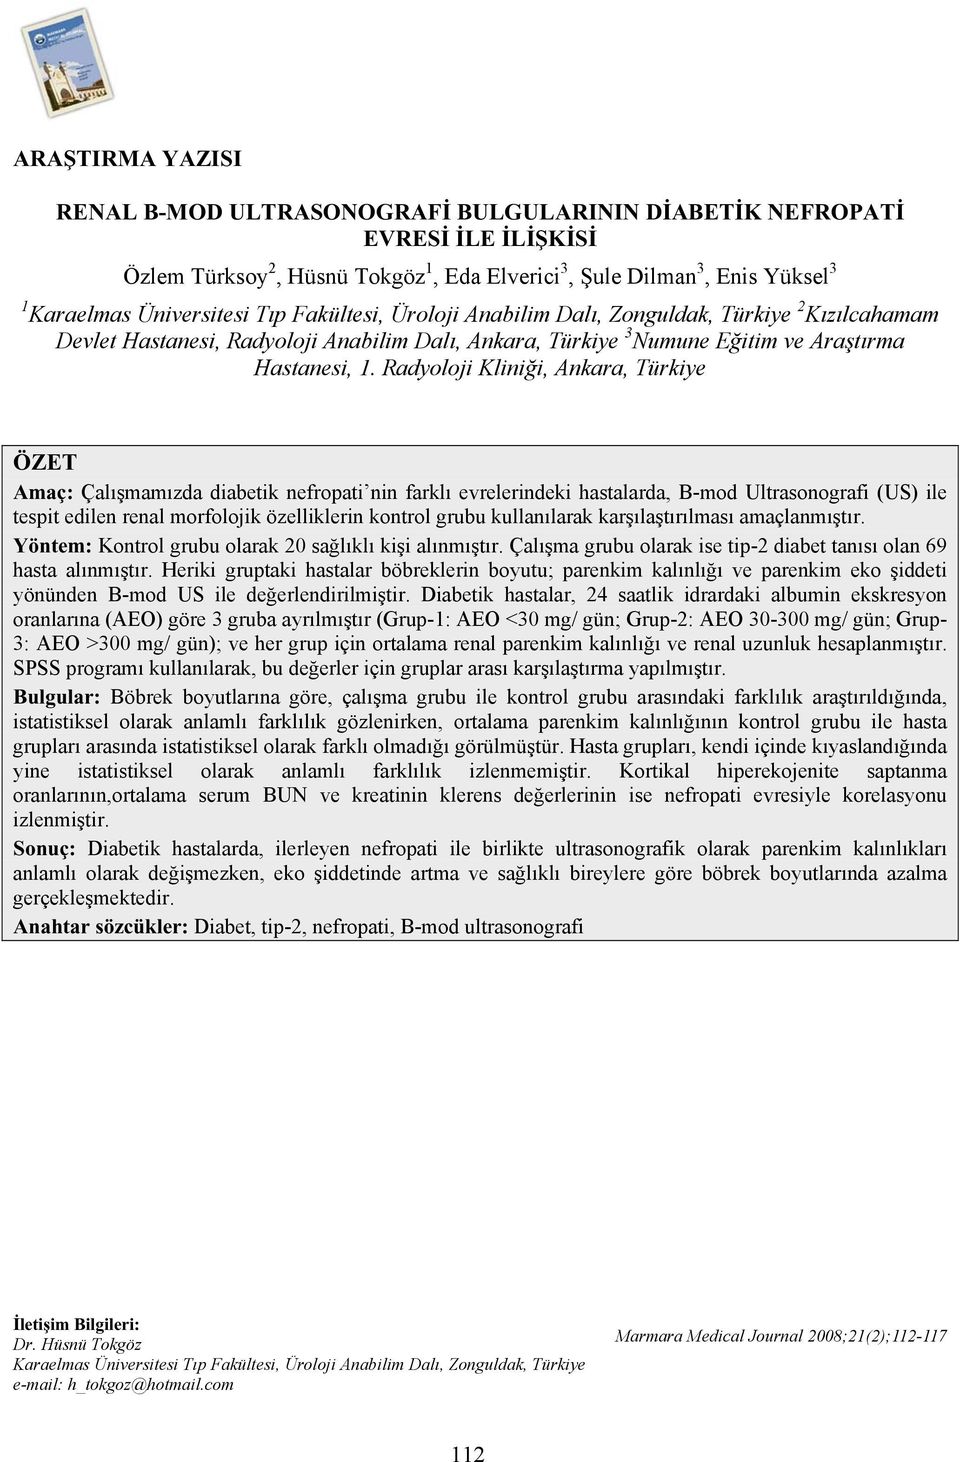 Radyoloji Kliniği, Ankara, Türkiye ÖZET Amaç: Çalışmamızda diabetik nefropati nin farklı evrelerindeki hastalarda, B-mod Ultrasonografi (US) ile tespit edilen renal morfolojik özelliklerin kontrol